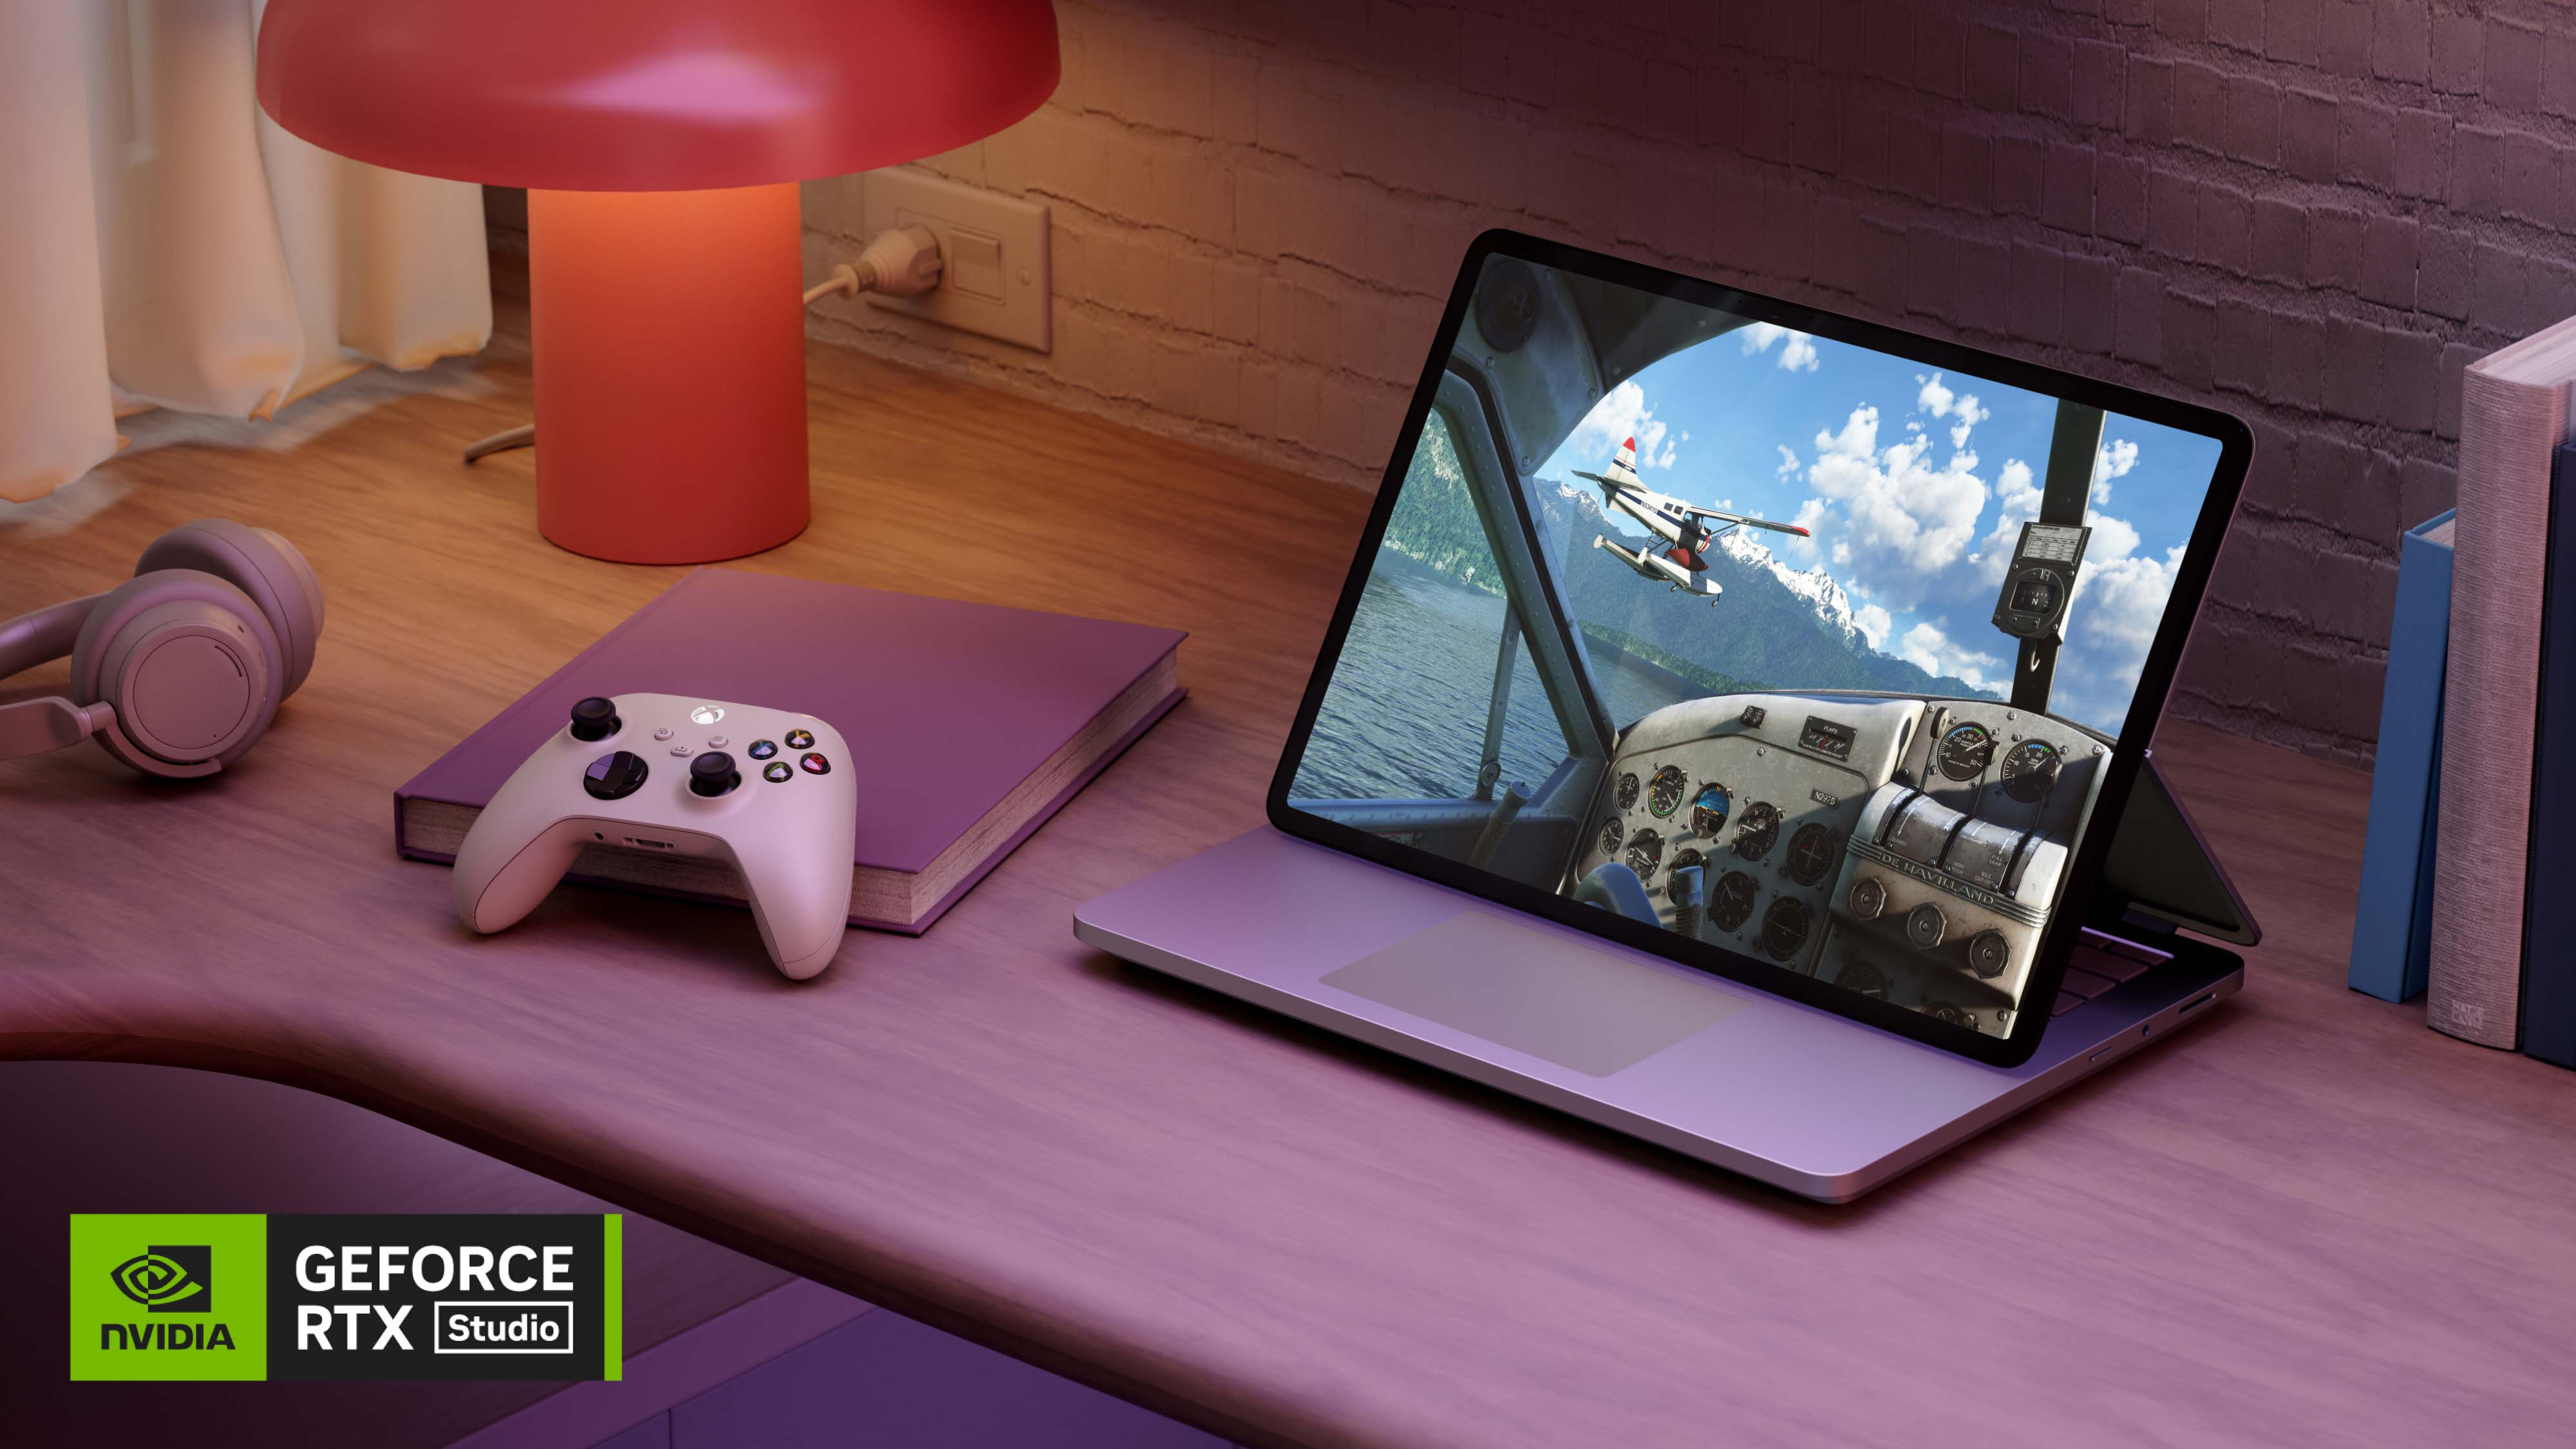 Surface Laptop Studio 2 in podiummodus naast een koptelefoon, een gamecontroller en een boek op een houten bureau.